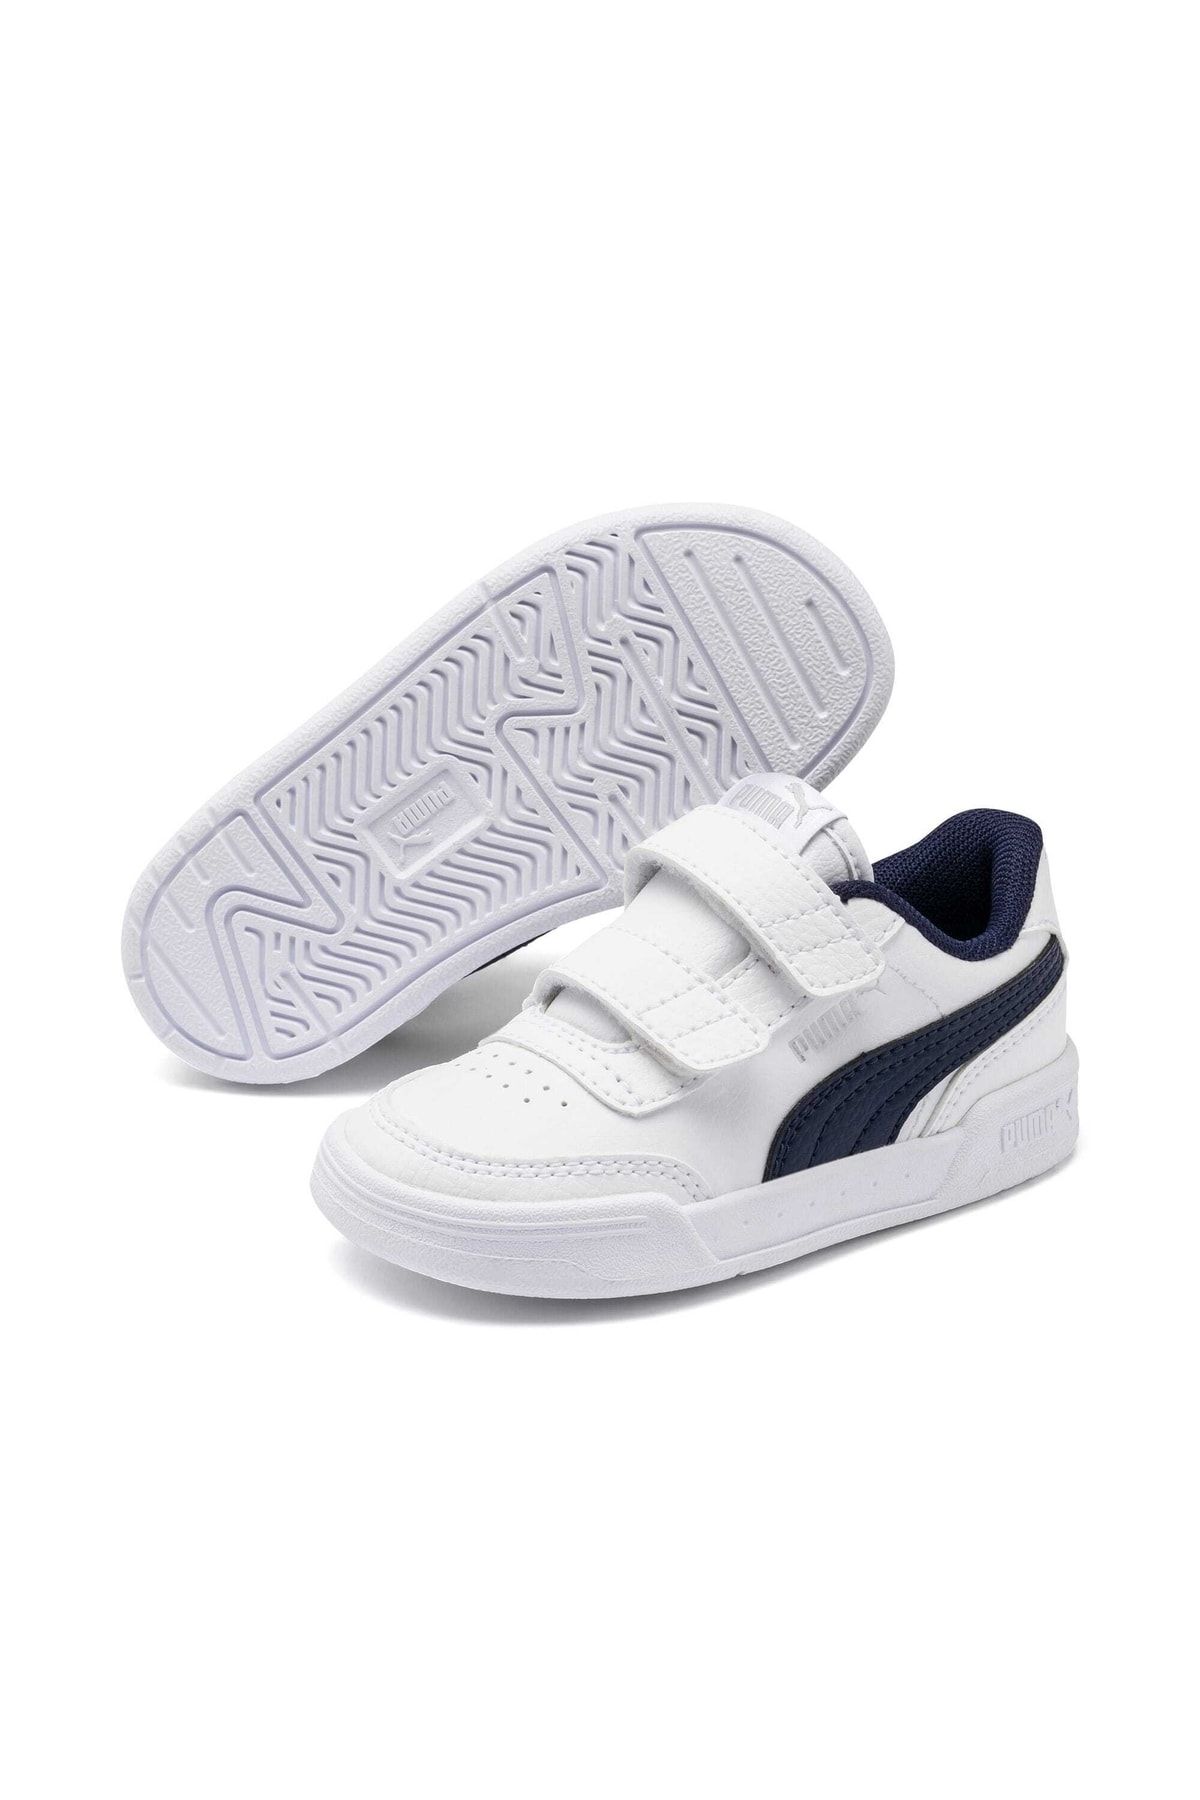 Puma Unisex Bebek Beyaz Caracal Bantlı  Ayakkabısı Sneaker